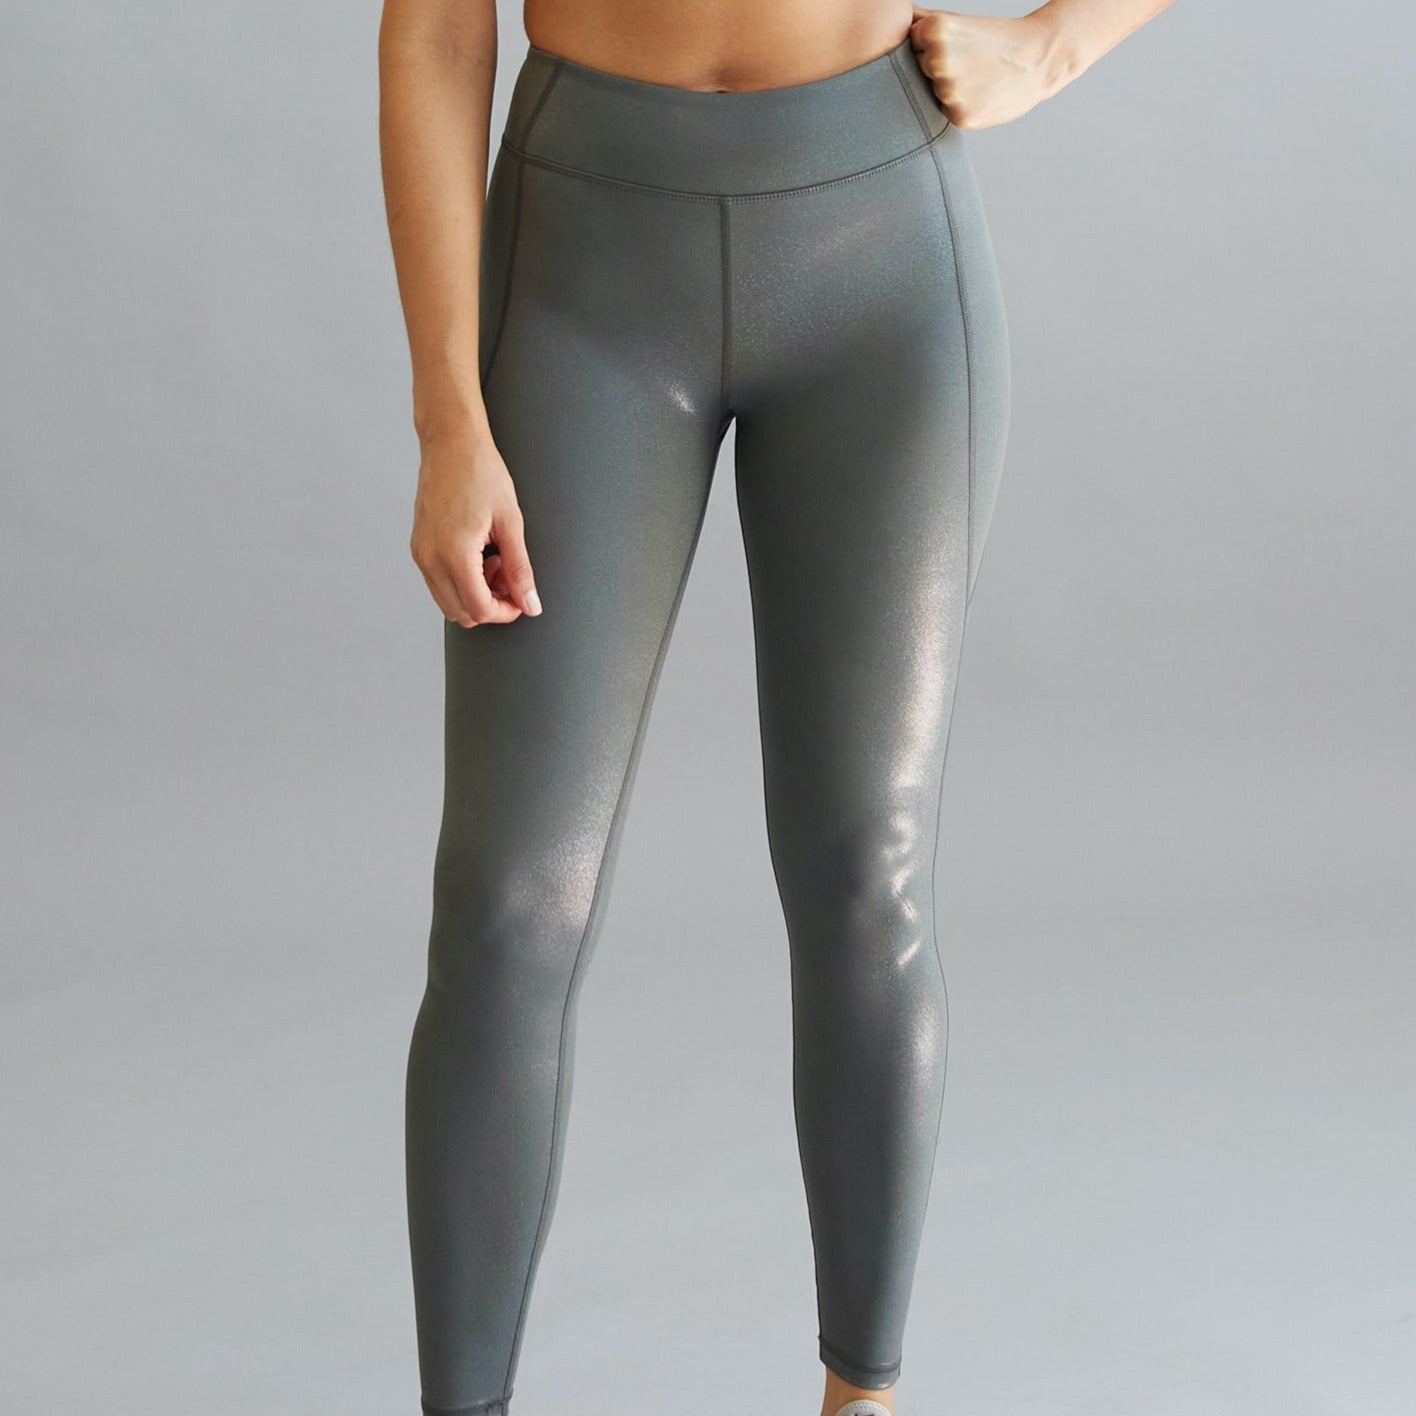 Buy Yoga Pants For Women Online - Zoe Leggings - SCHAAD Active